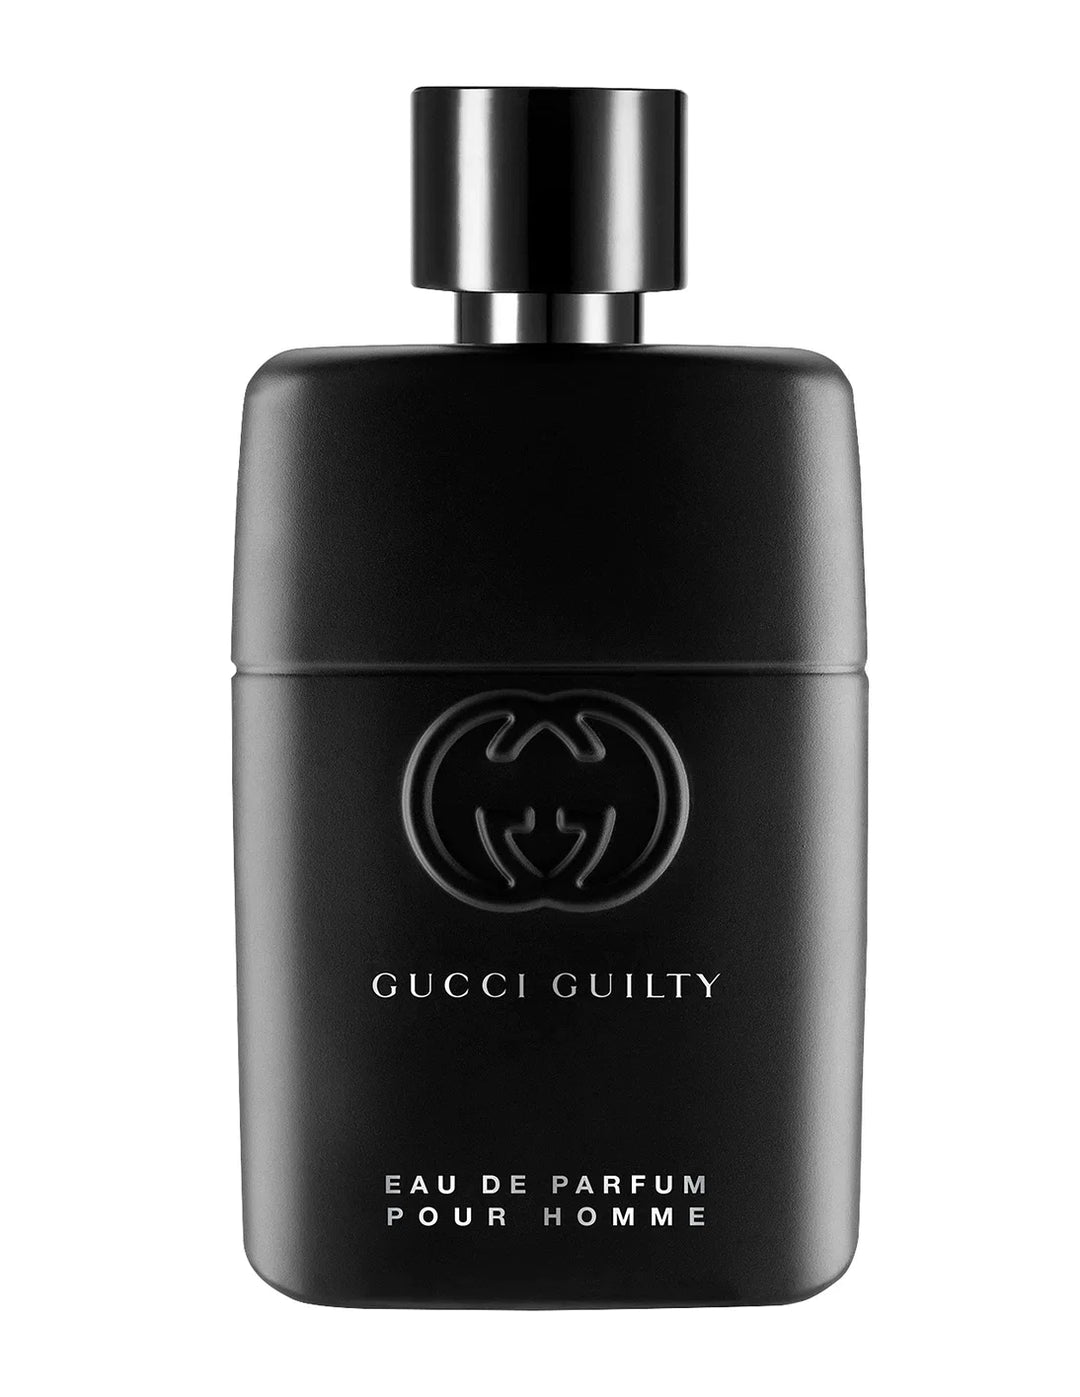 GUCCI Guilty Eau De Parfum For Him